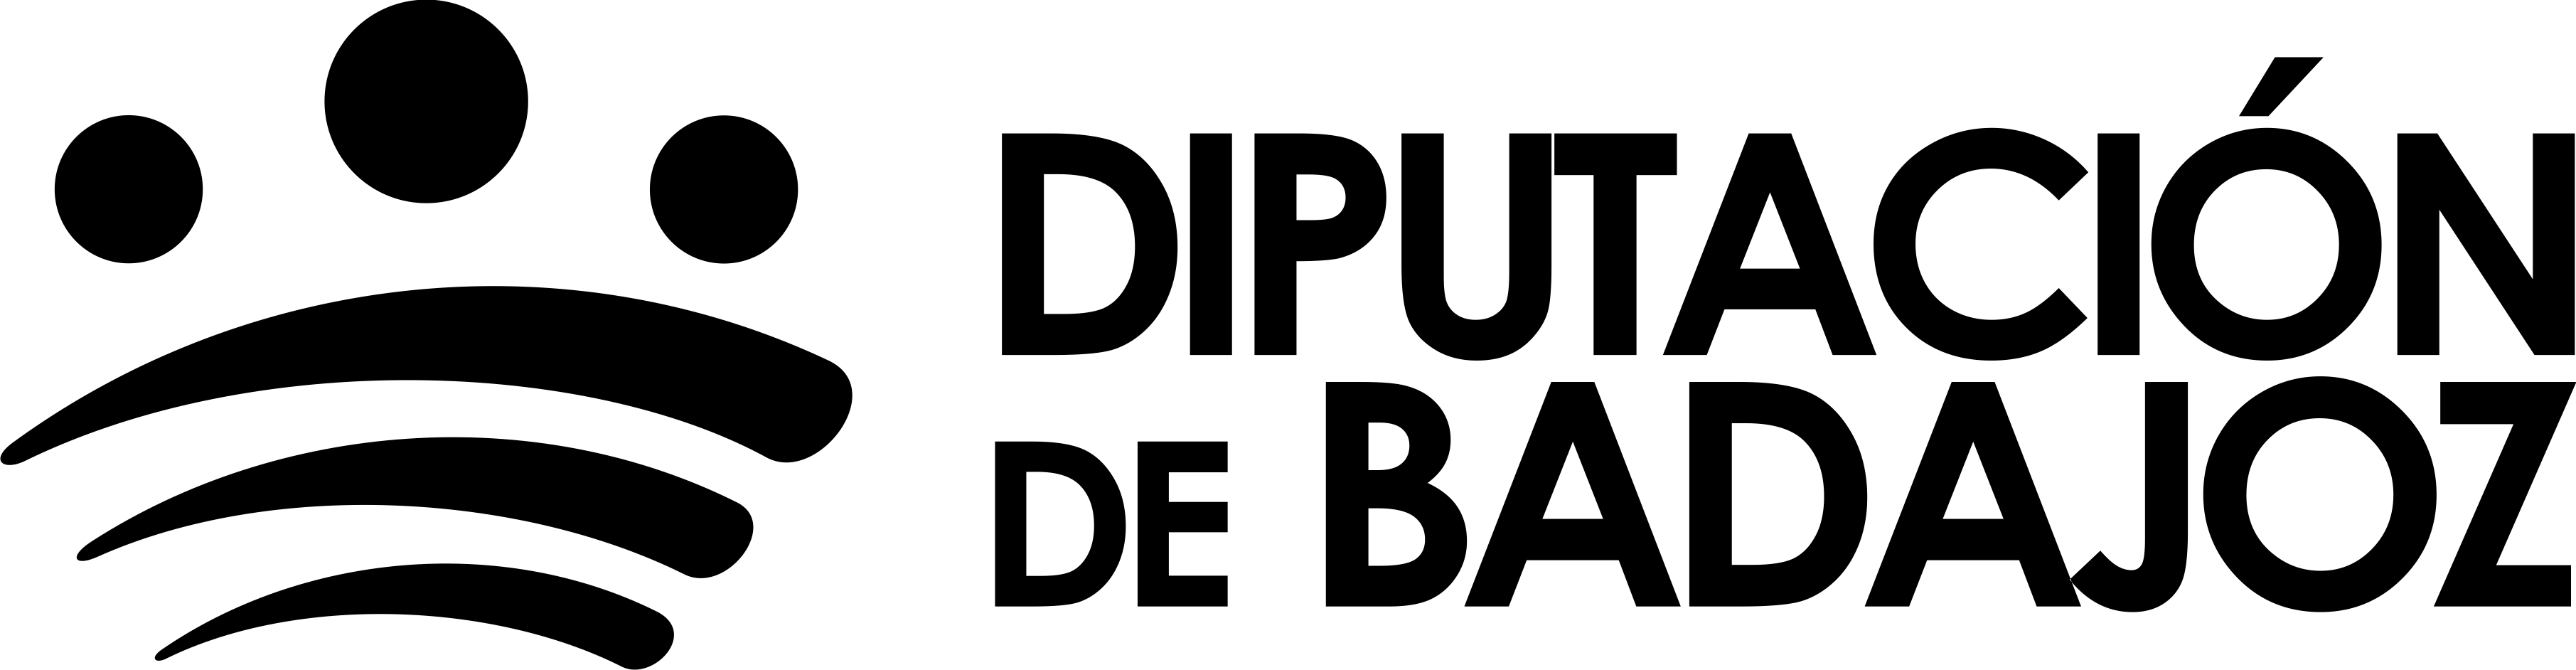 Logo Diputación de Badajoz. Negro Horizontal